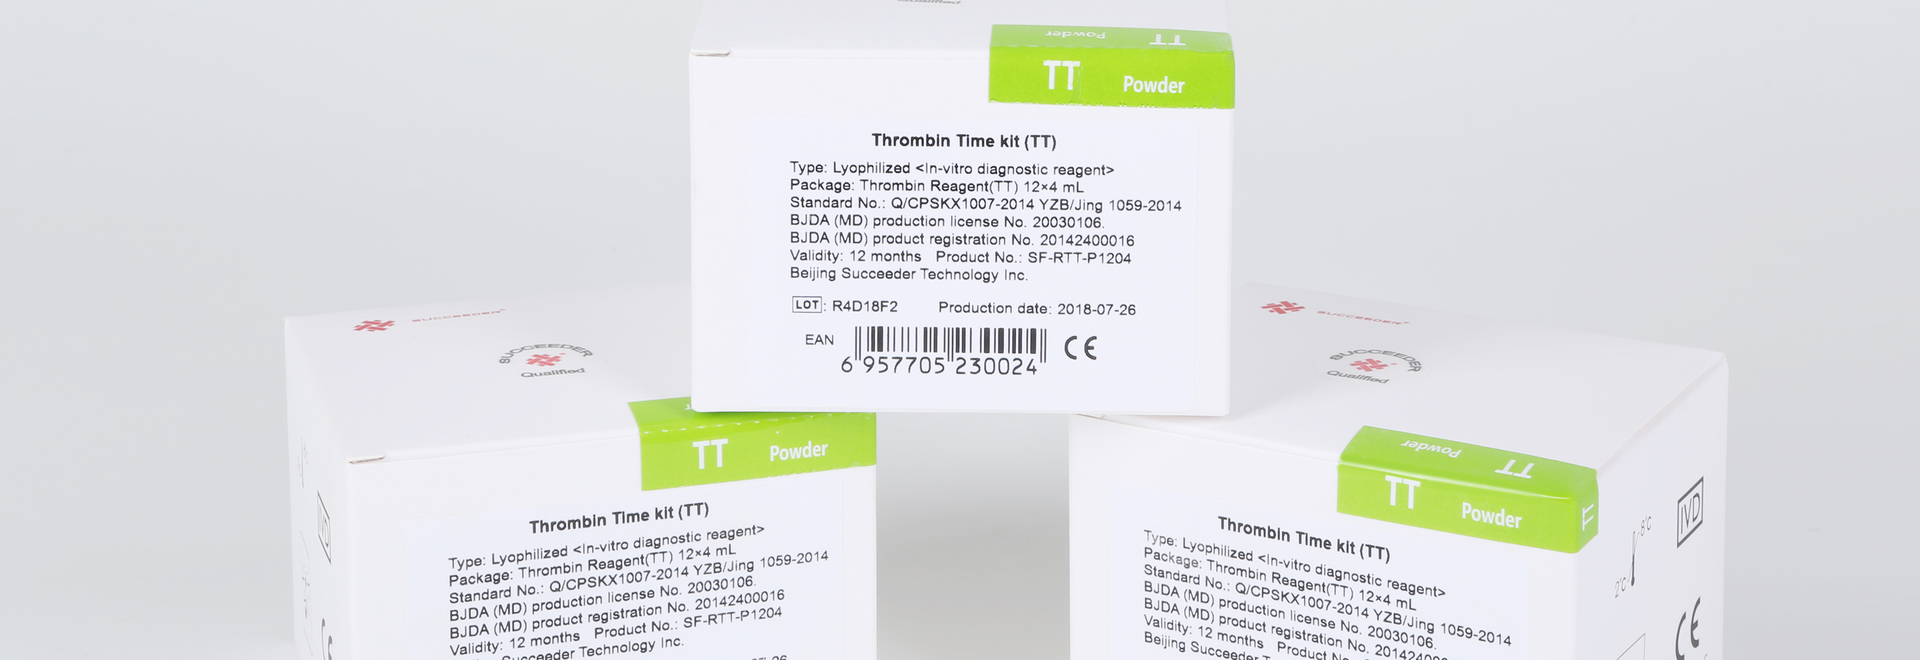 thrombin-time-kit-tt-39323-17056239